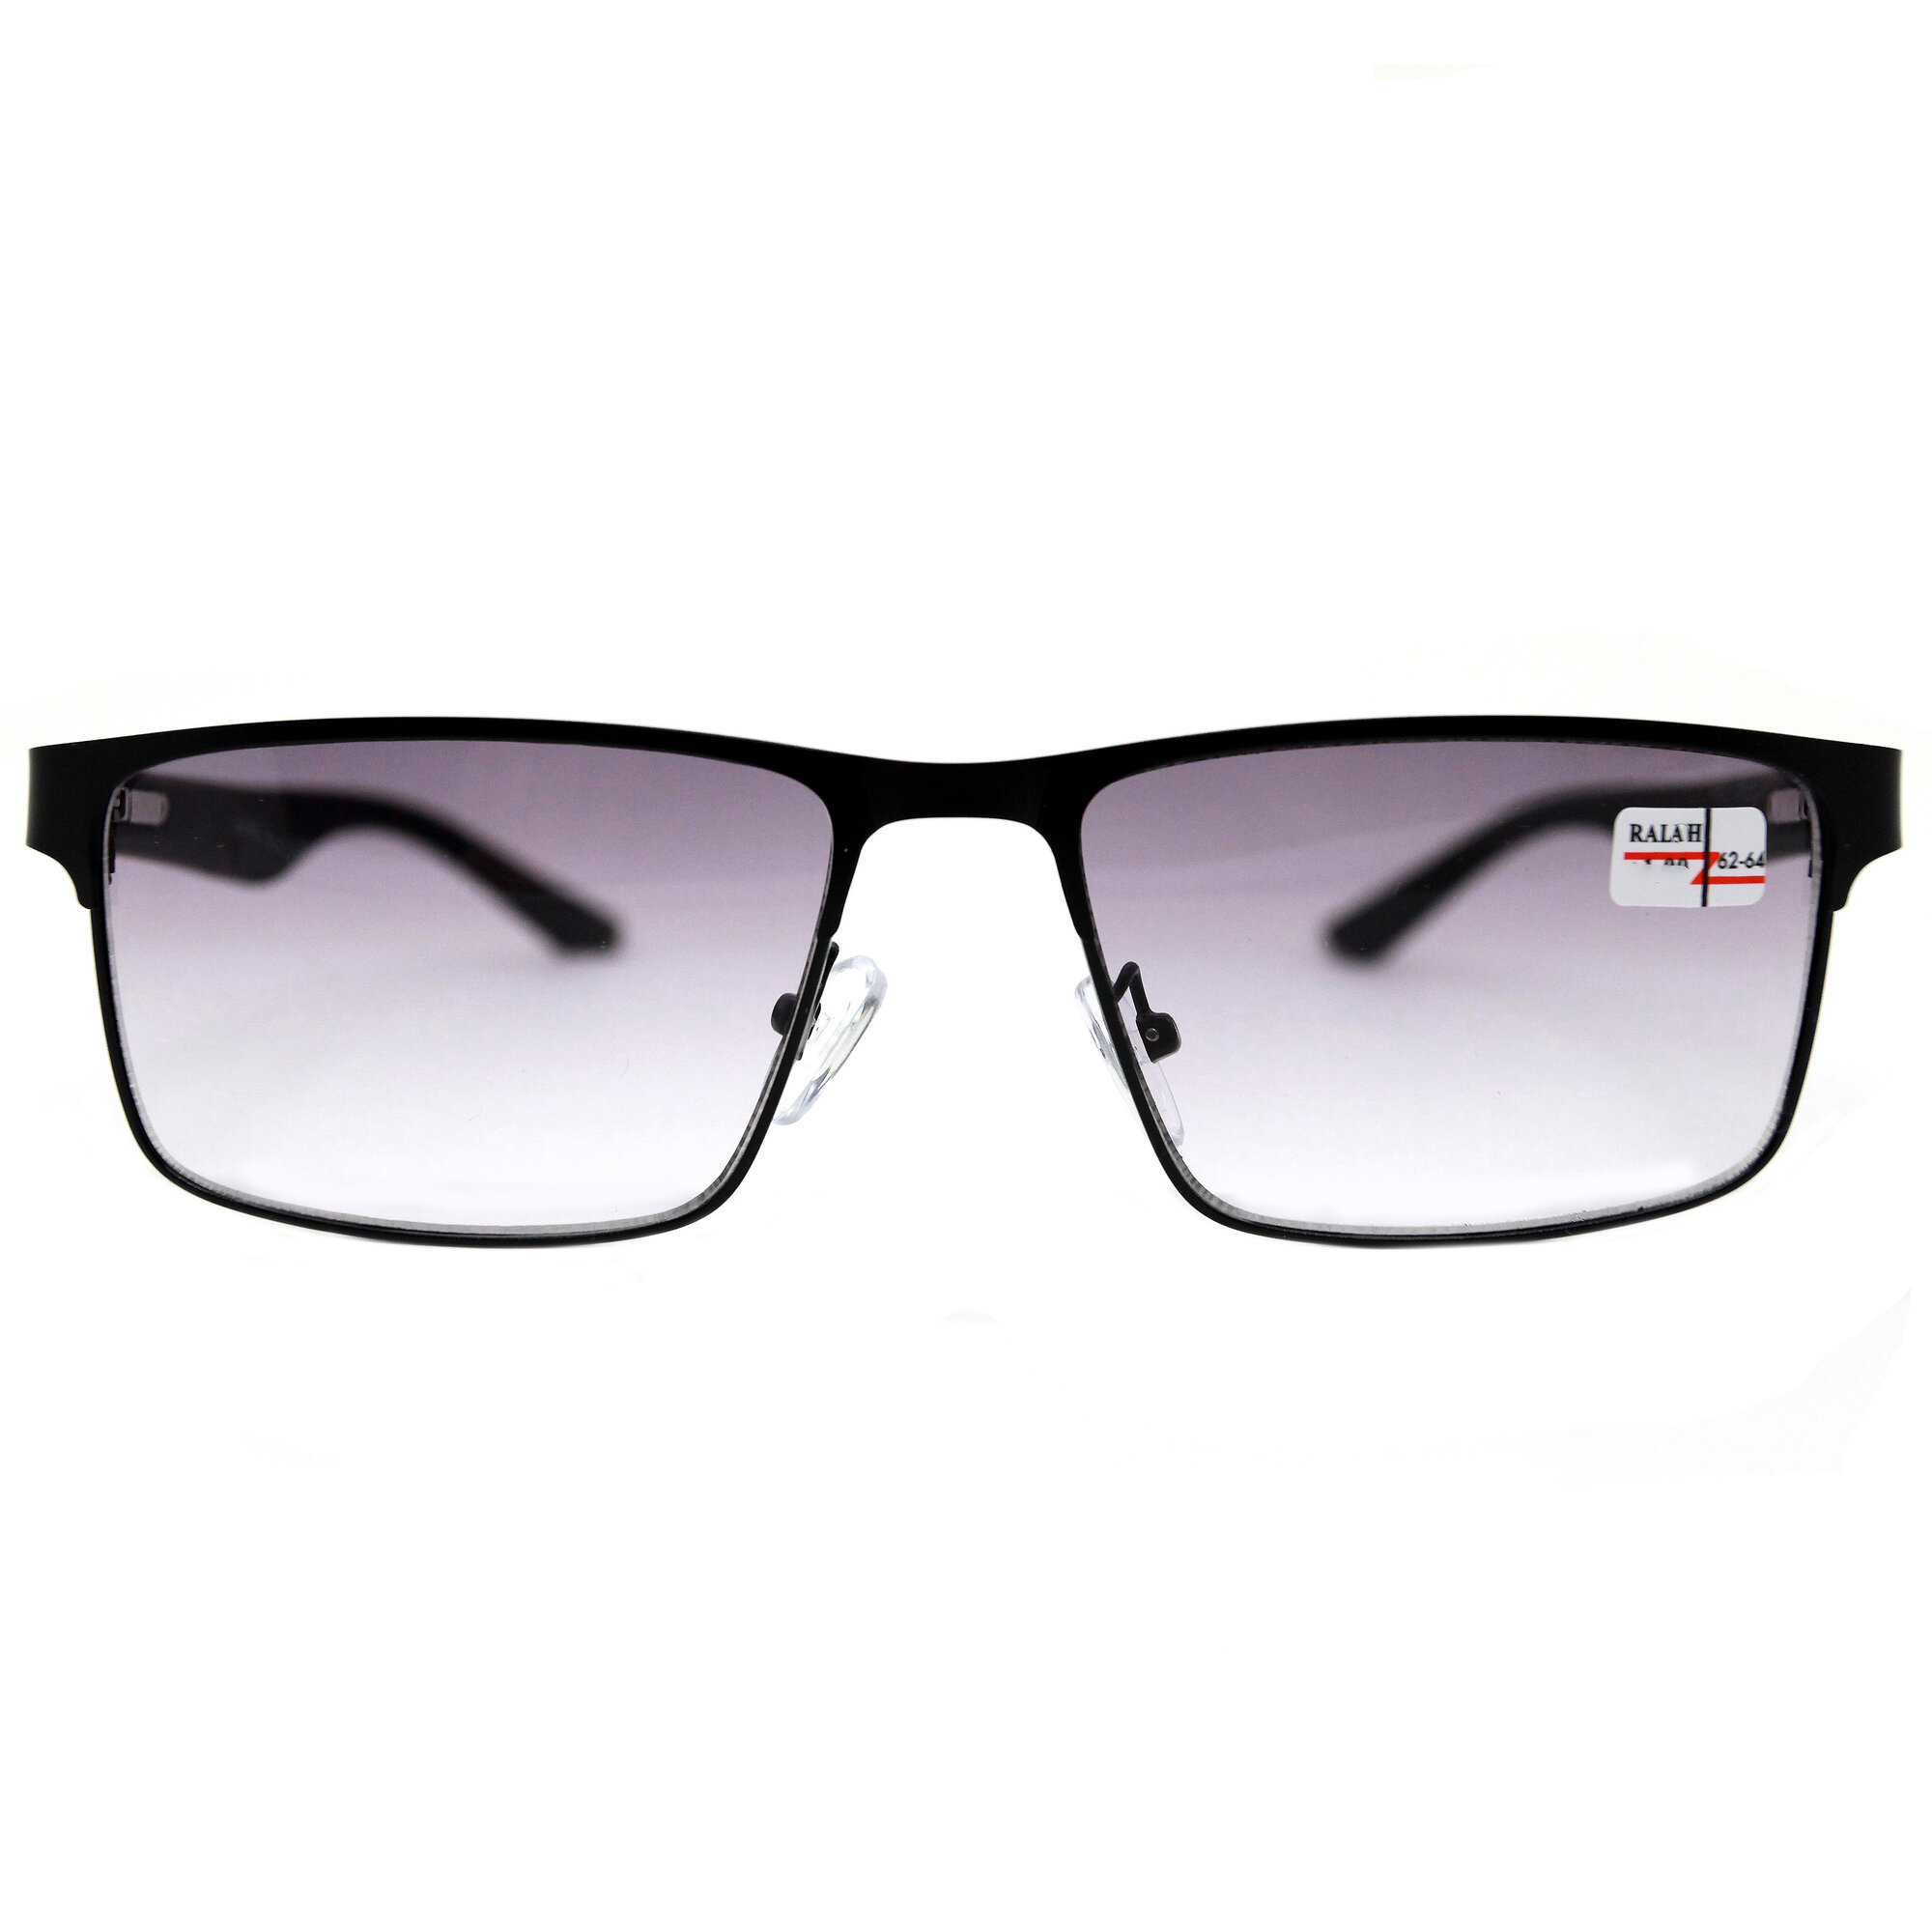 Корригирующие очки с тонировкой для дали (-3.00) Glodiatr 0657 С1 цвет черный тонировка РЦ 62-64